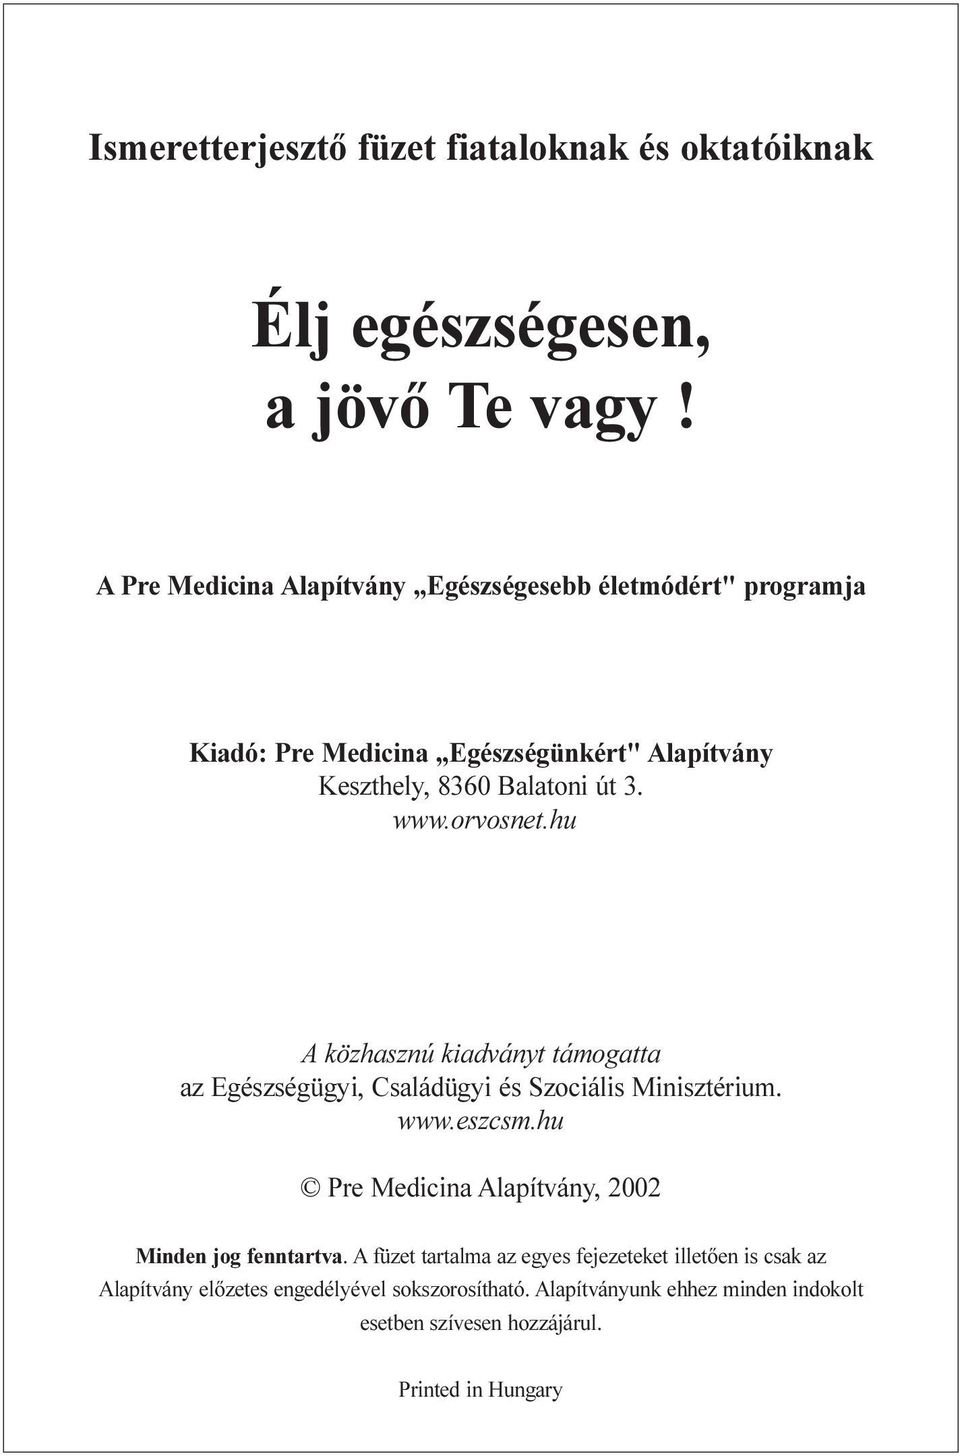 orvosnet.hu A közhasznú kiadványt támogatta az Egészségügyi, Családügyi és Szociális Minisztérium. www.eszcsm.